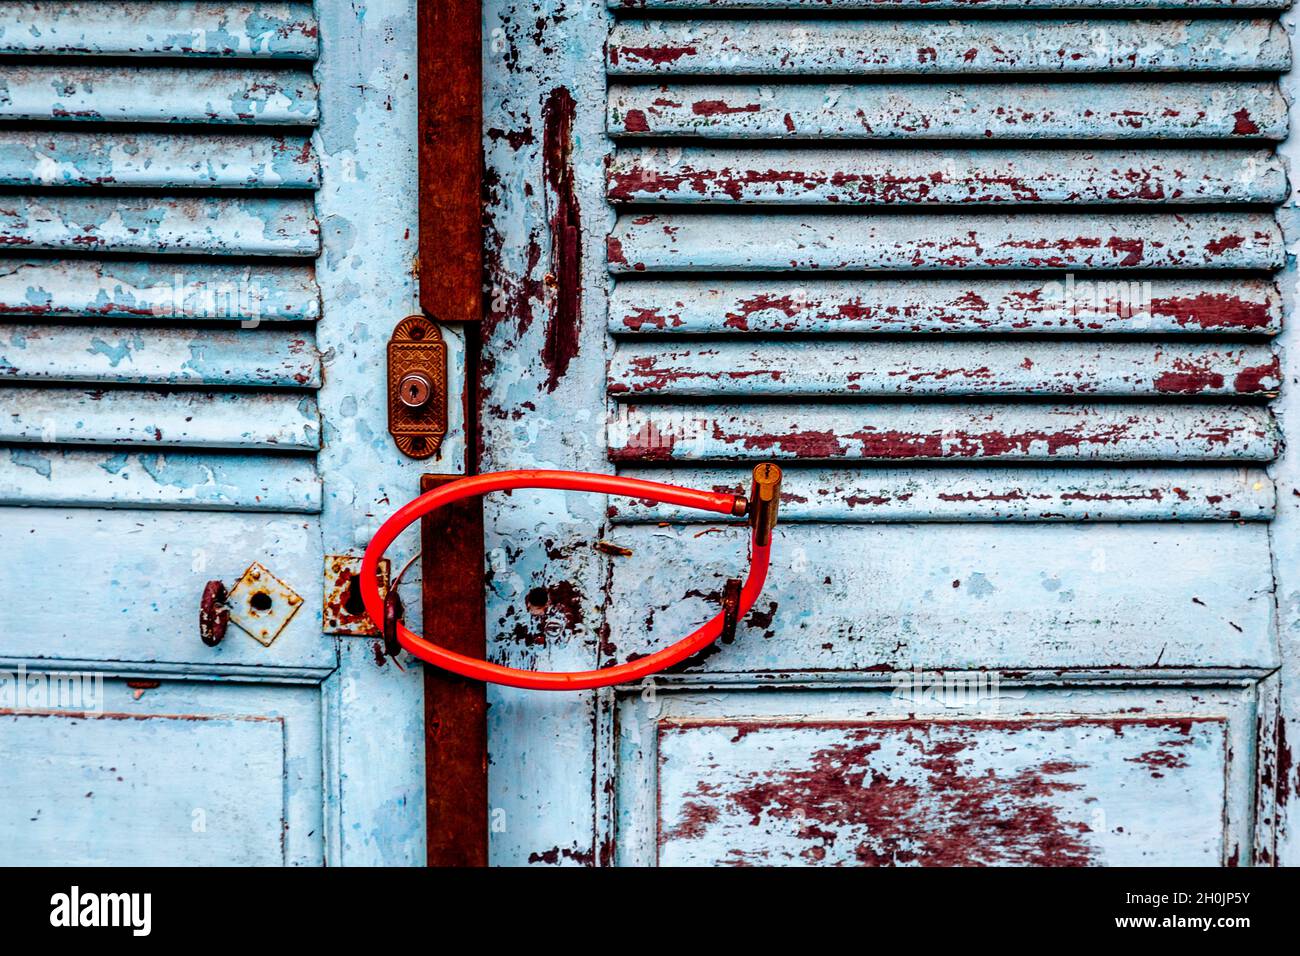 Un câble rouge verrouille deux portes ensemble dans la vieille ville de Hoi an pendant Covid-19. Banque D'Images